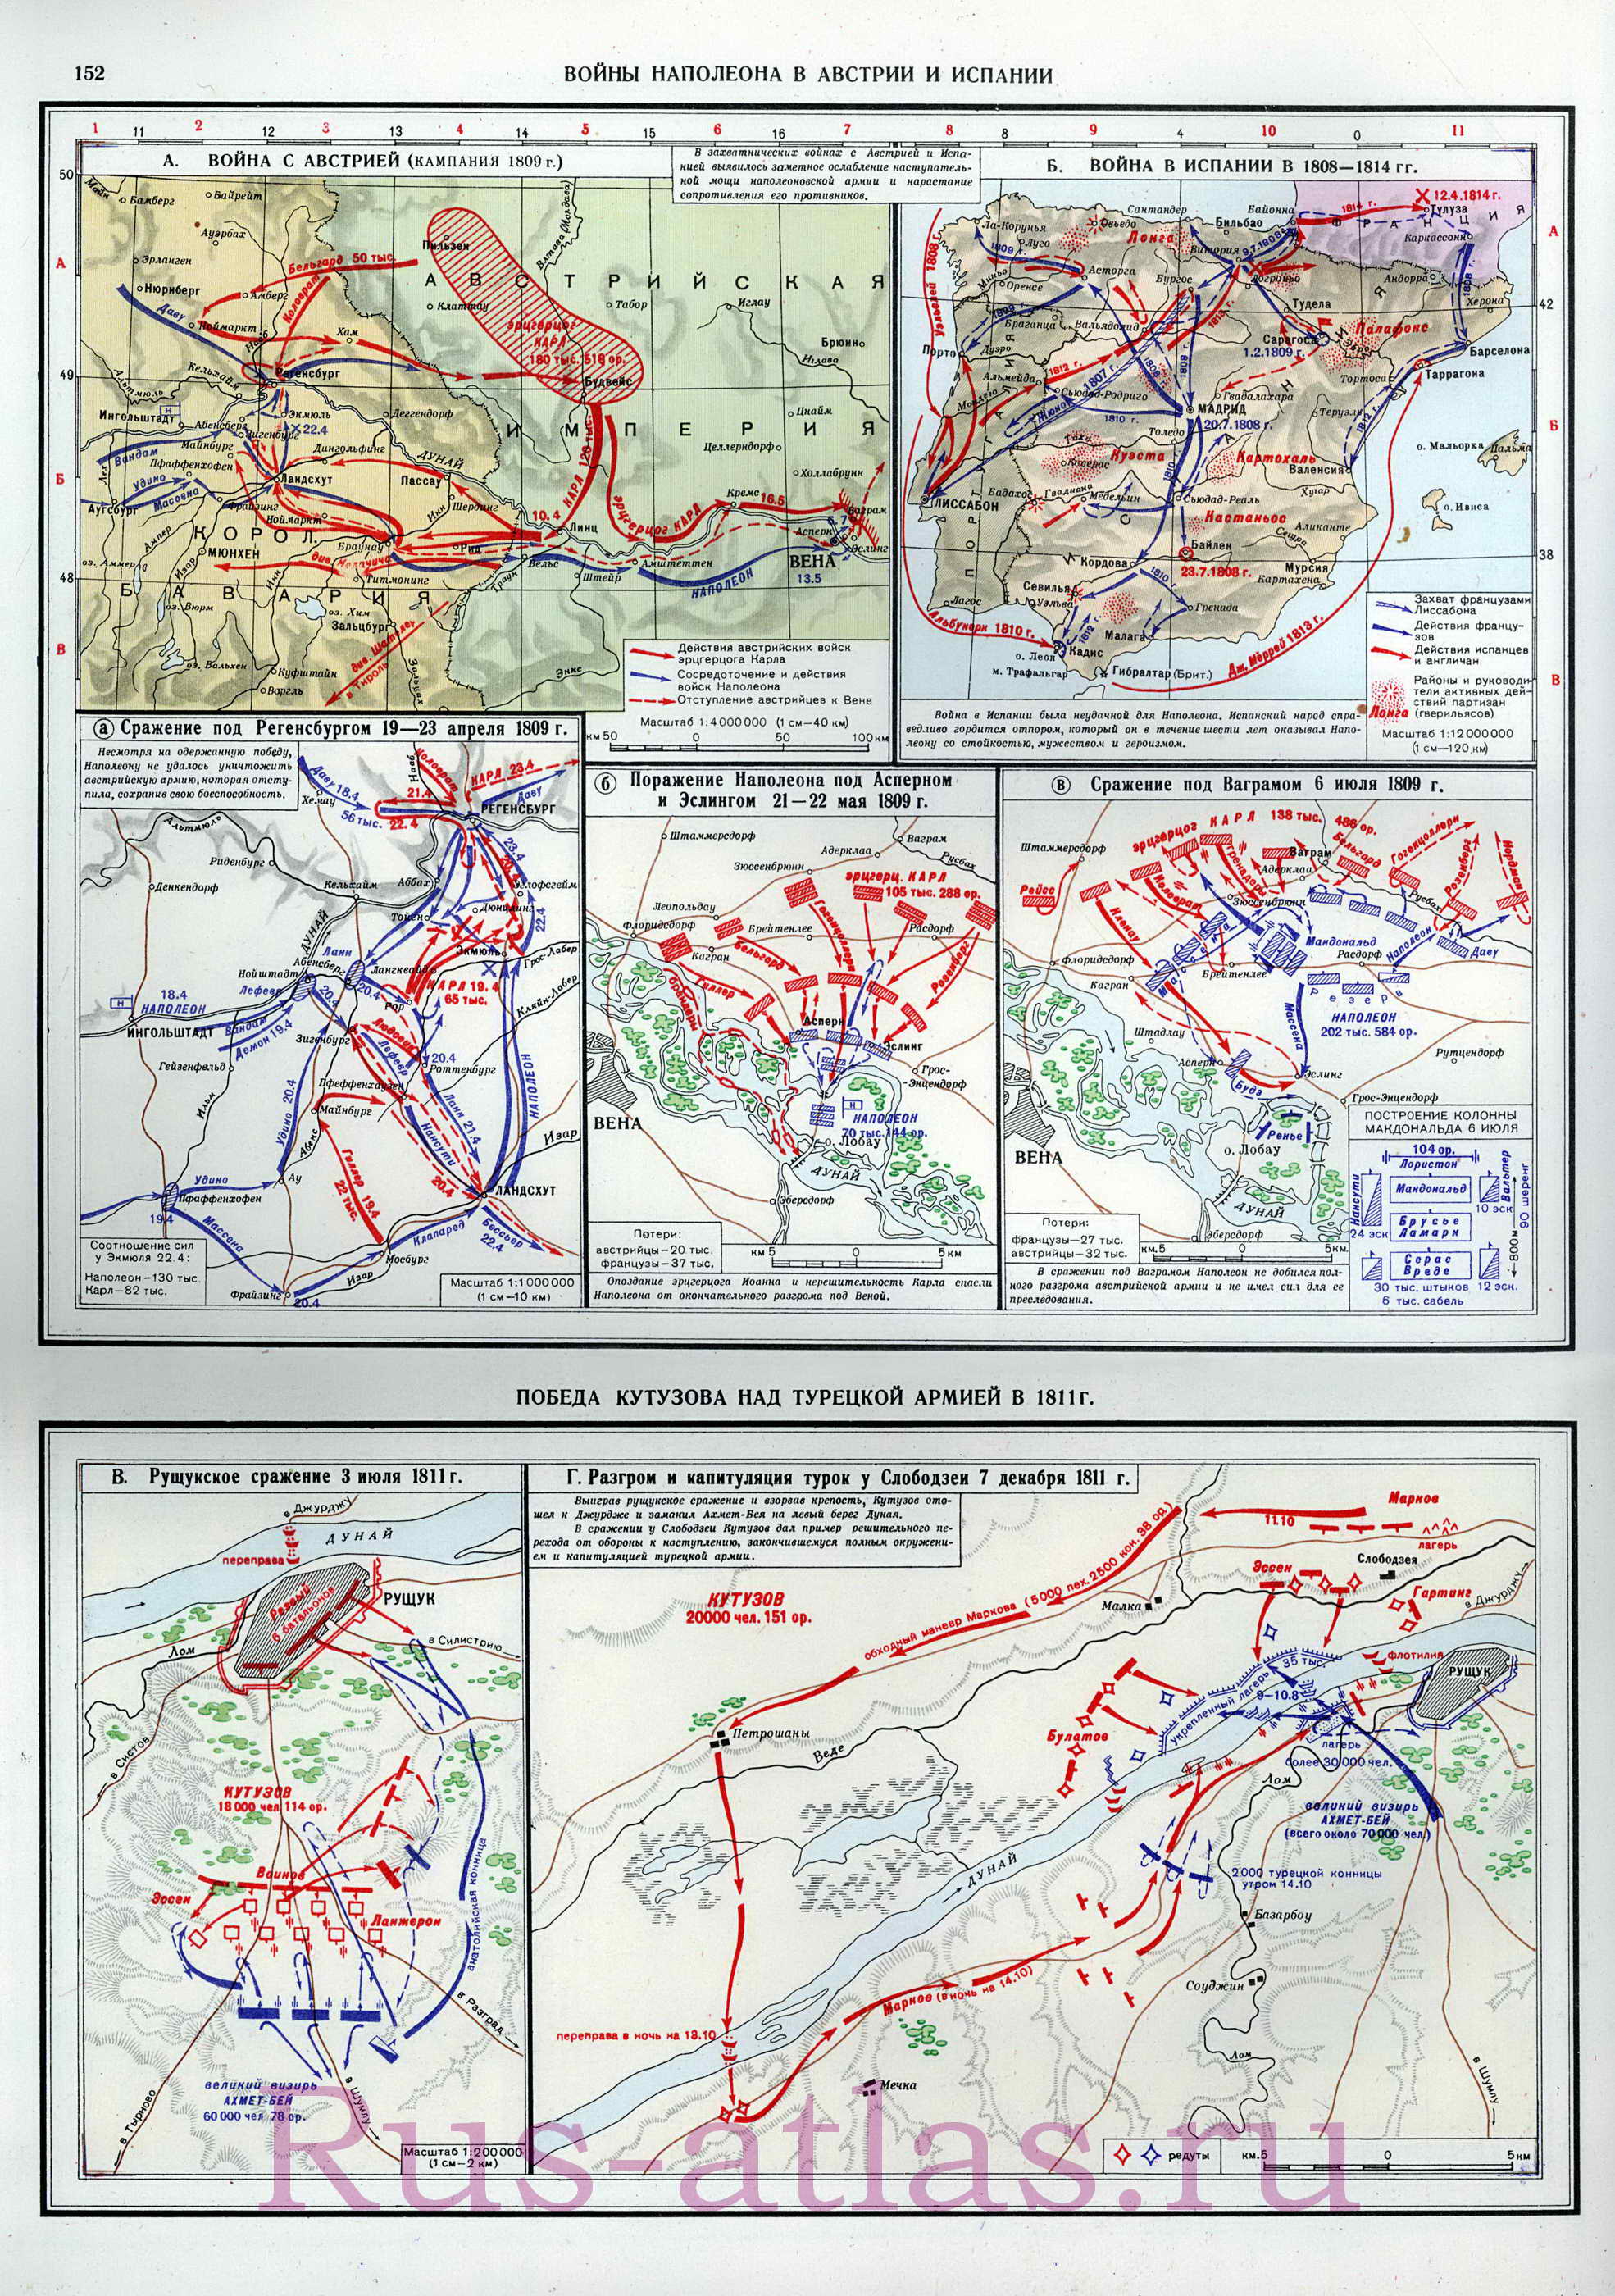 Карта походов Наполеона в Австрию и Испанию 1808-1814. Карта схема победы Кутузова над турецкой армией на Дунае в 1811 году, A0 - 